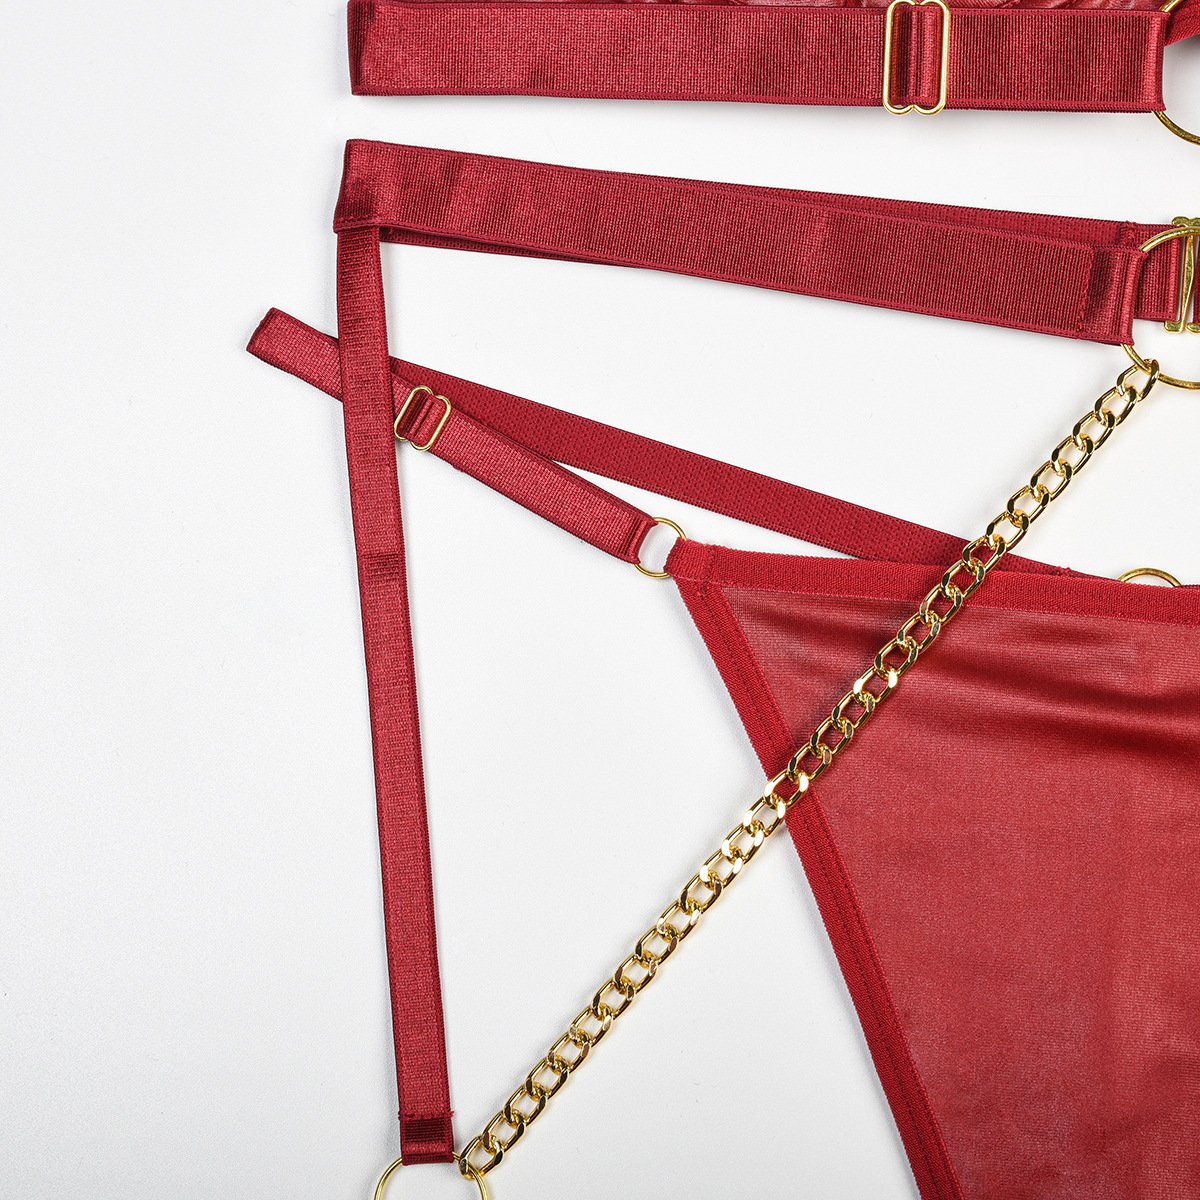 Harness metal chain o ring garter lingerie set